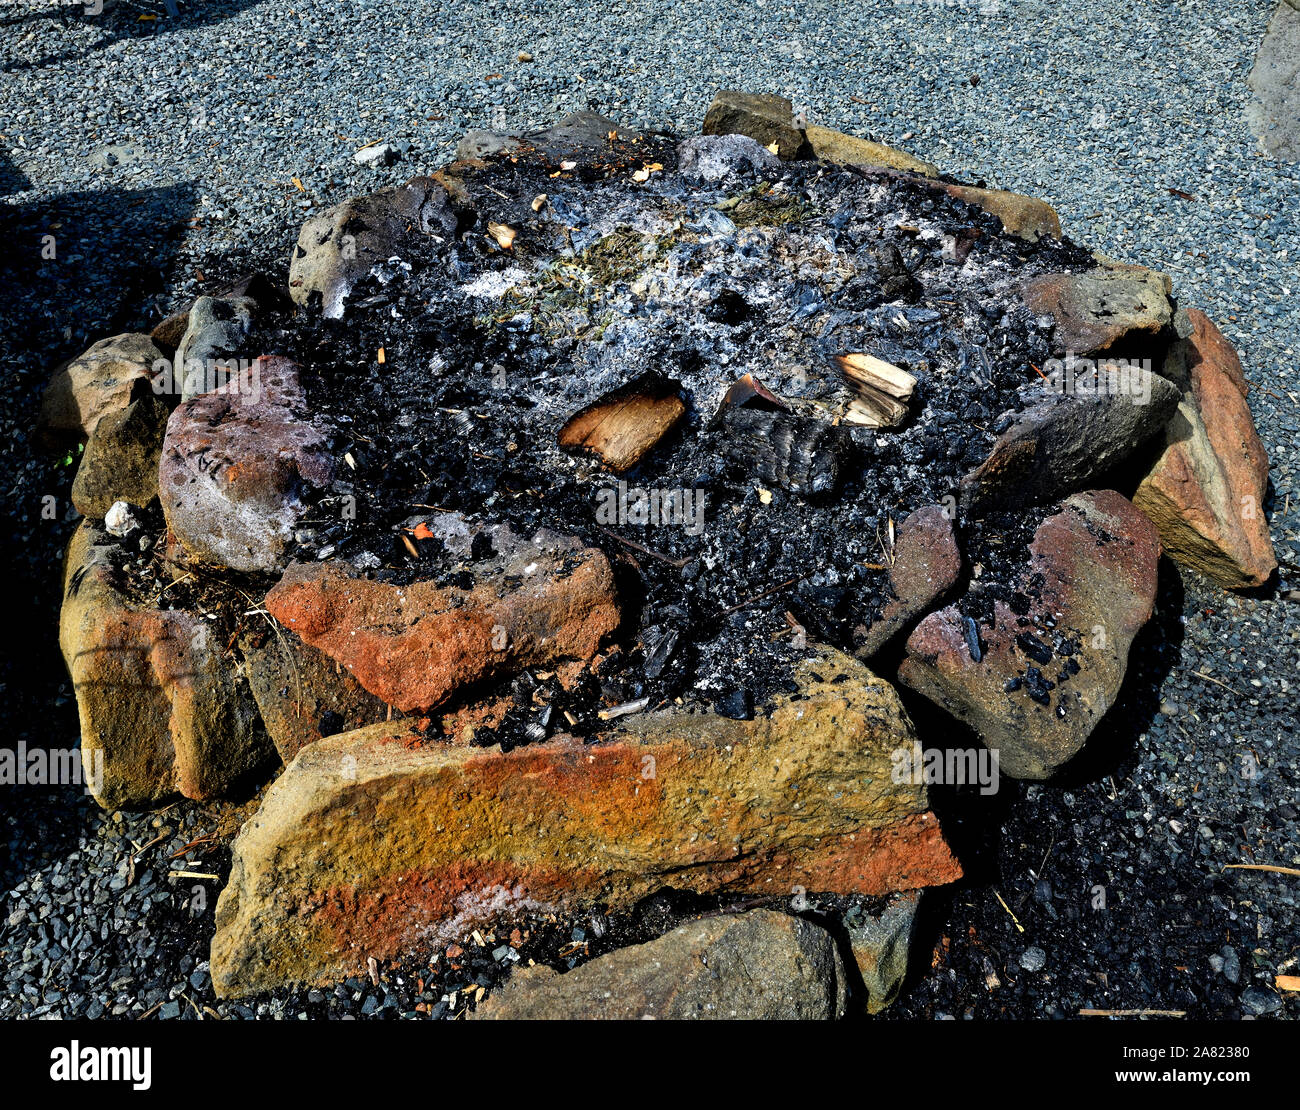 Un round in una buca per il fuoco realizzato dal posizionamento di pietre in un cerchio e utilizzata per bruciare il legno per la ricreazione e divertimento. Foto Stock